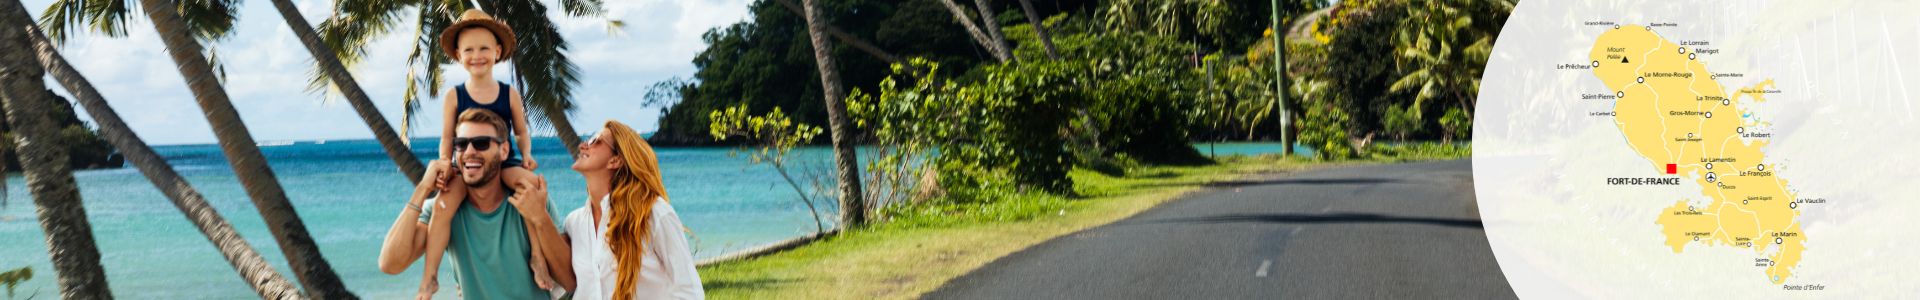 vacances en Martinique circuit automobile decouverte de lile